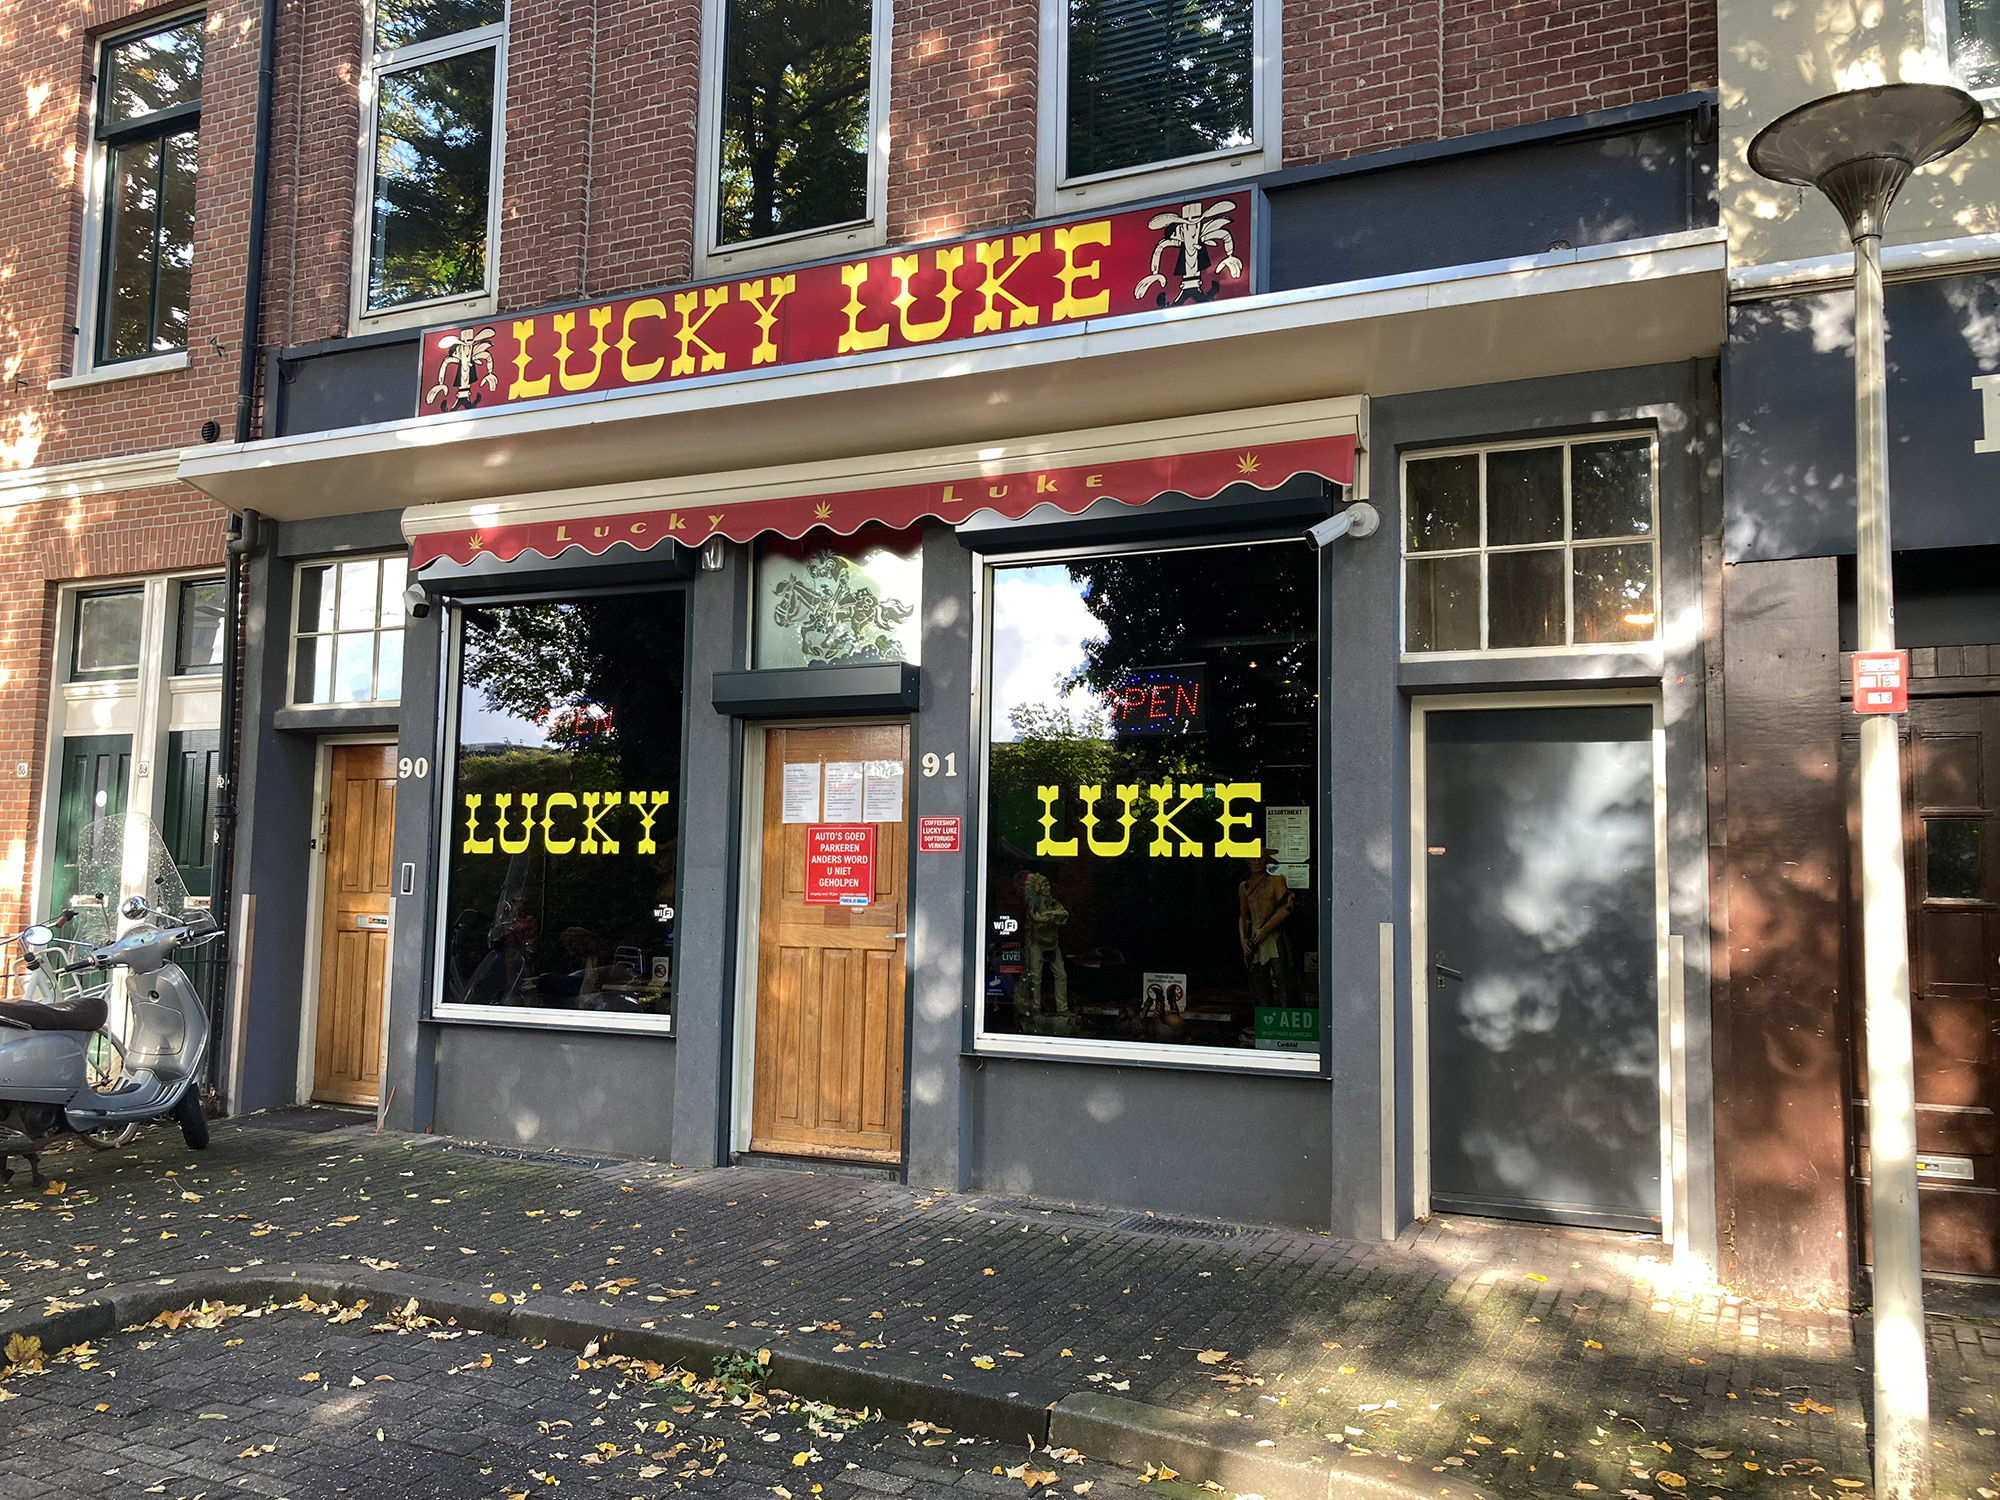 Coffeeshop Lucky Luke